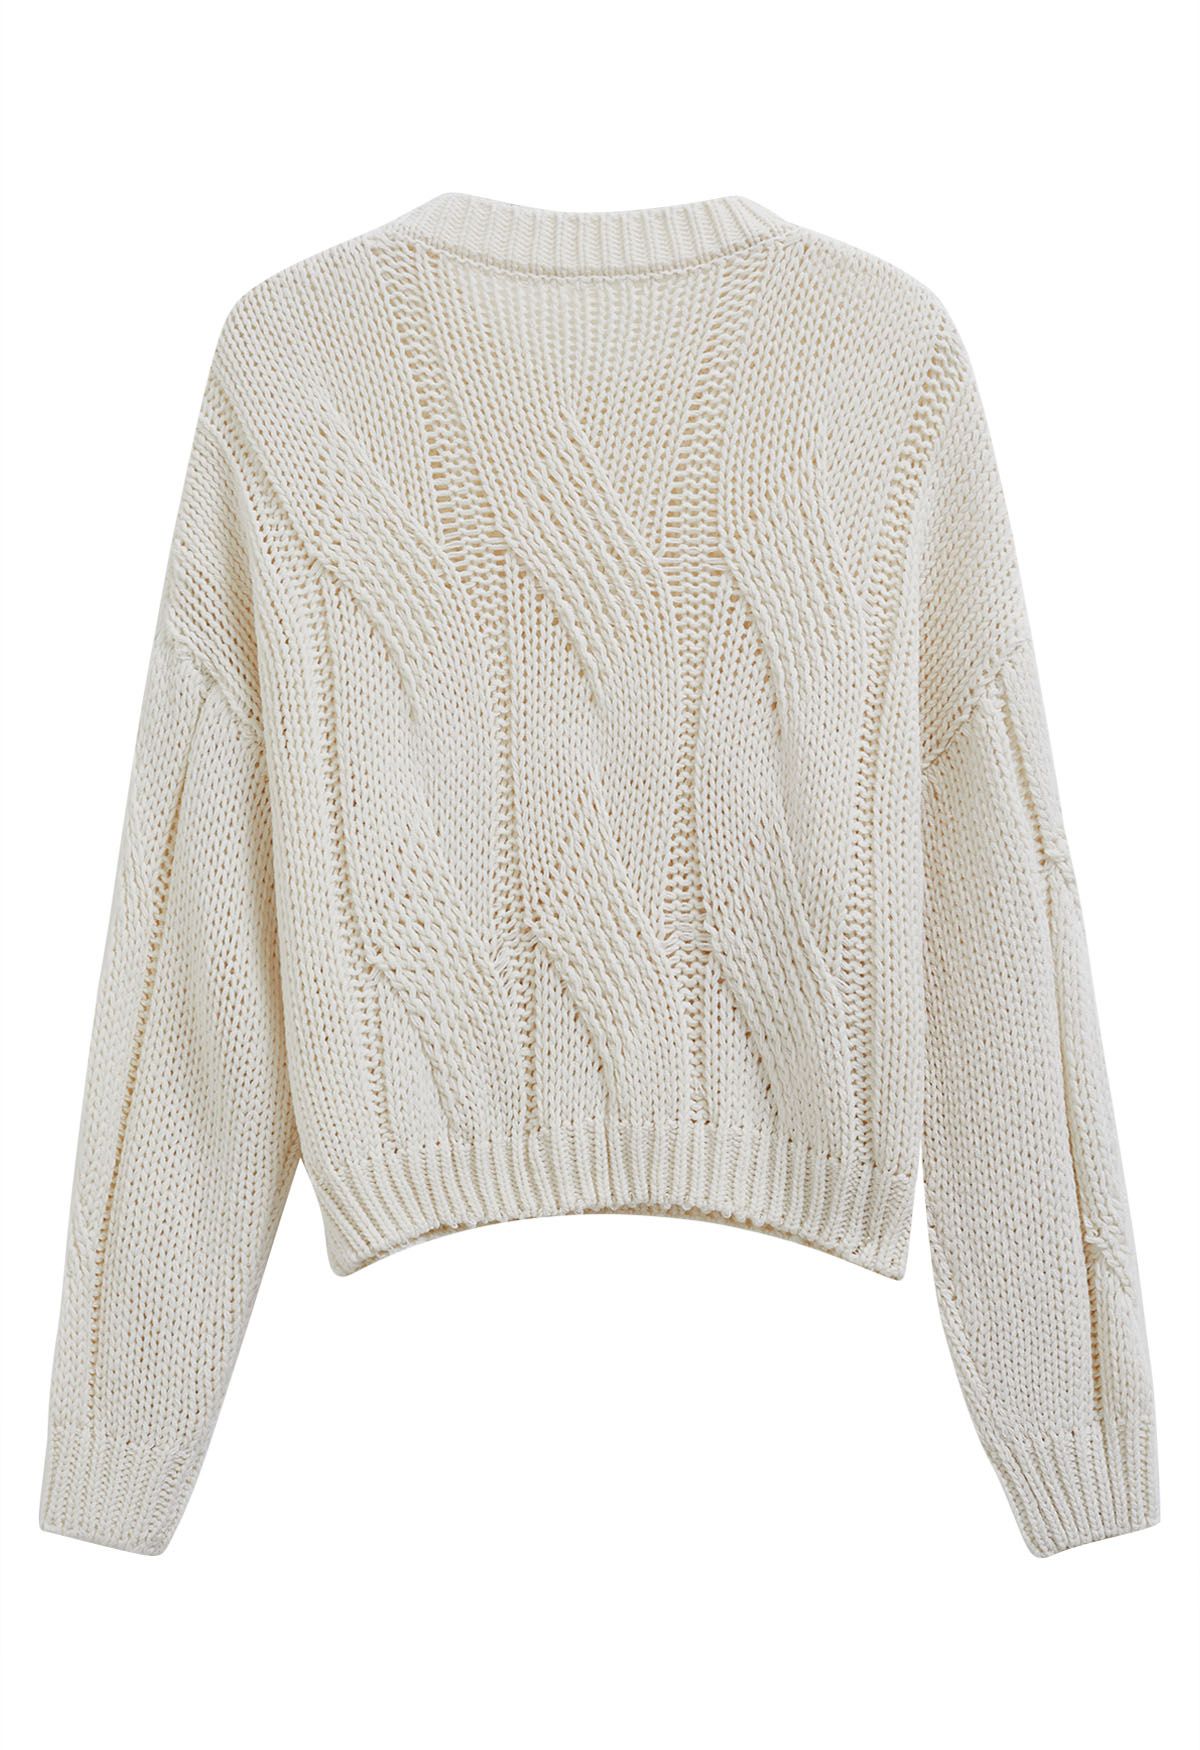 Suéter de punto trenzado Casual Elegance en color crema